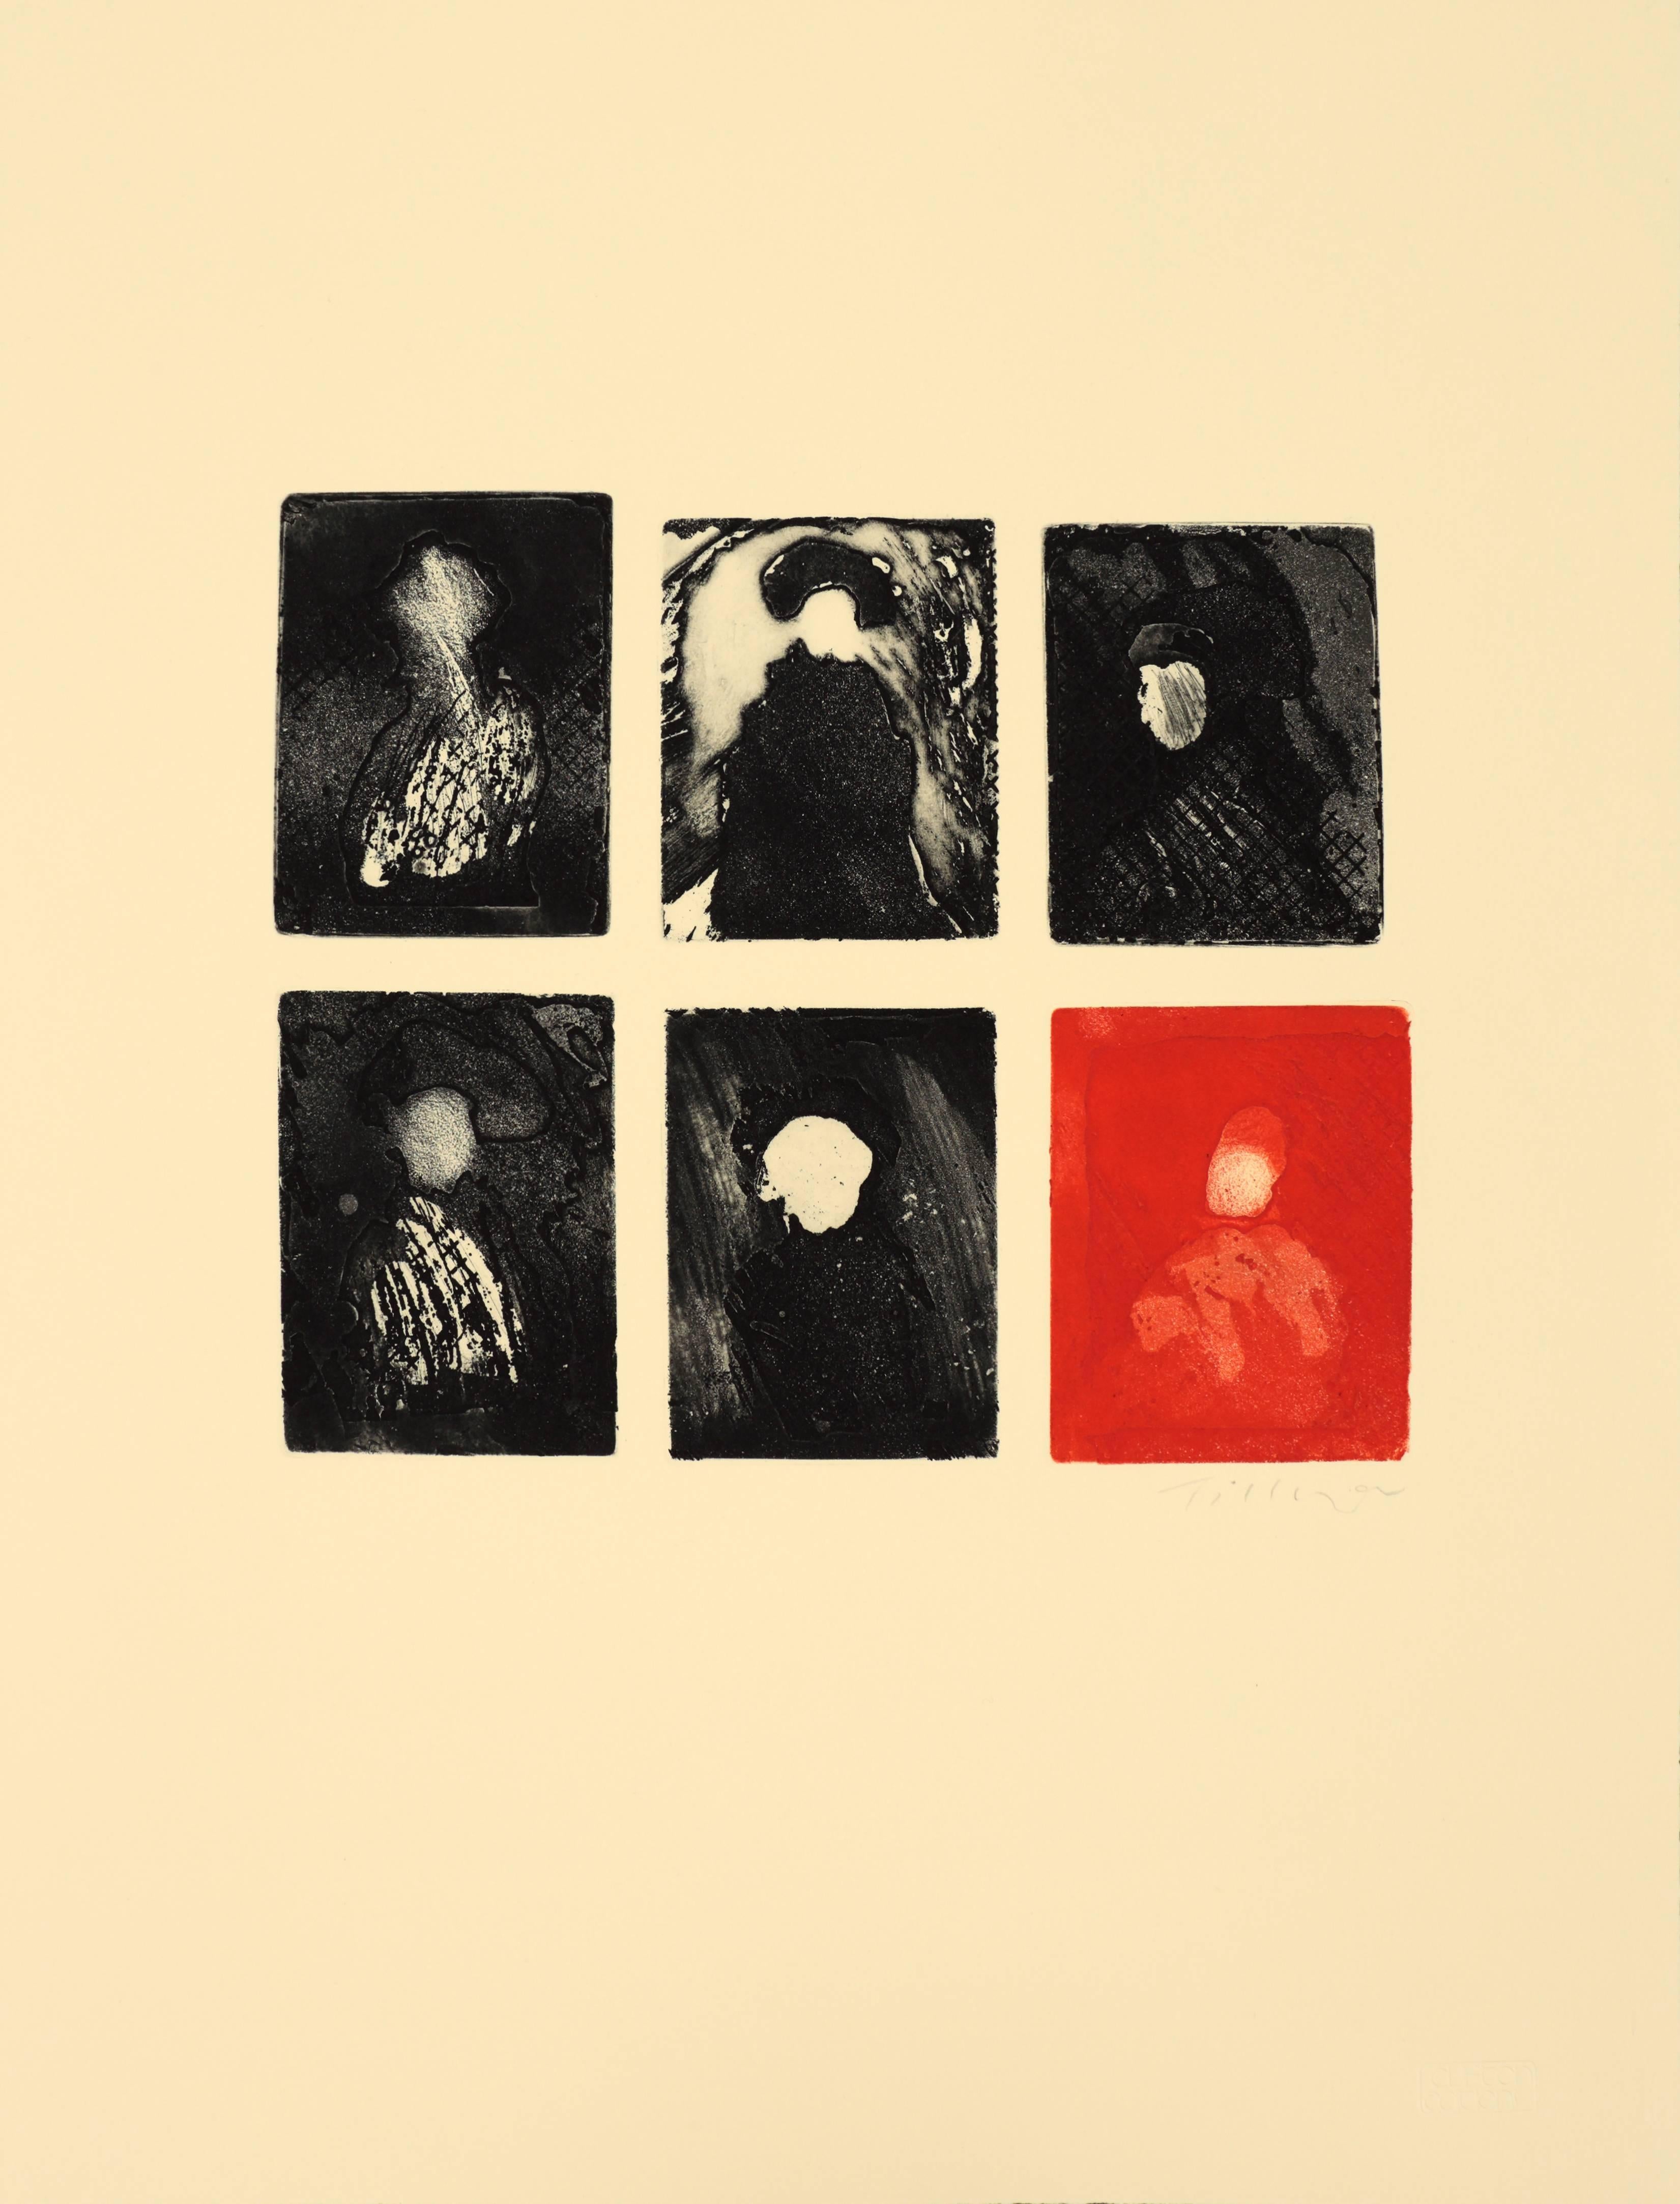 Abstract Print William Tillyer - Les Descendents/Portraits - "Ces portraits insolites et sombres, accrochés à haute hauteur, ne portent pas de visages."